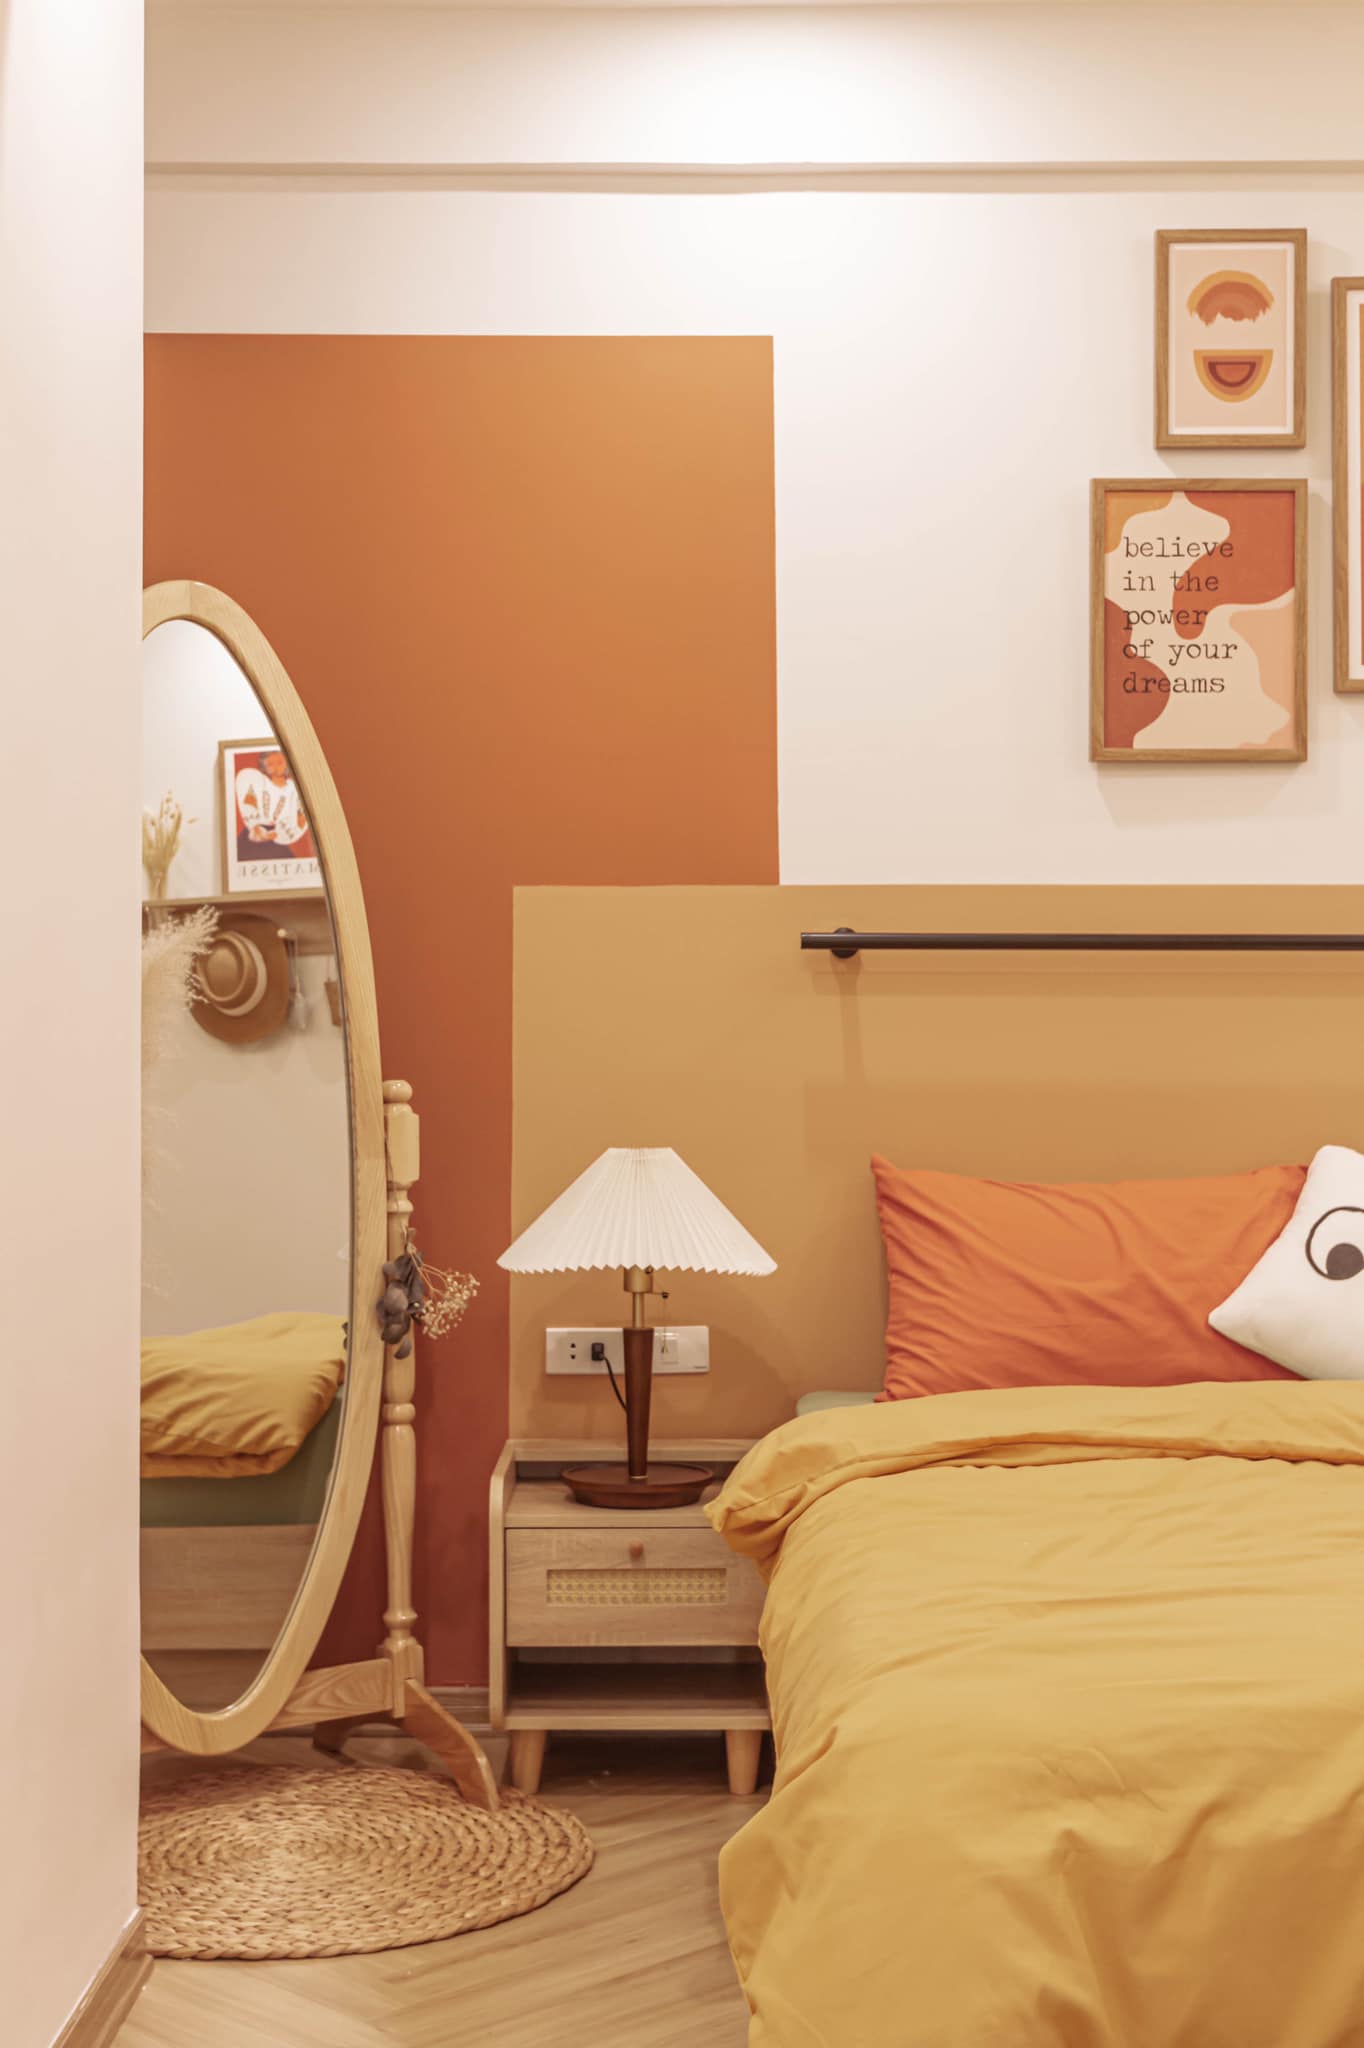 Phòng ngủ của cặp đôi được thiết kế ngọt ngào với tone màu cam, vàng mù tạt và màu be êm ái. Tấm gương hình oval đặt trên tấm thảm lục bình vừa duyên dáng vừa 'cơi nới' không gian bằng thị giác.